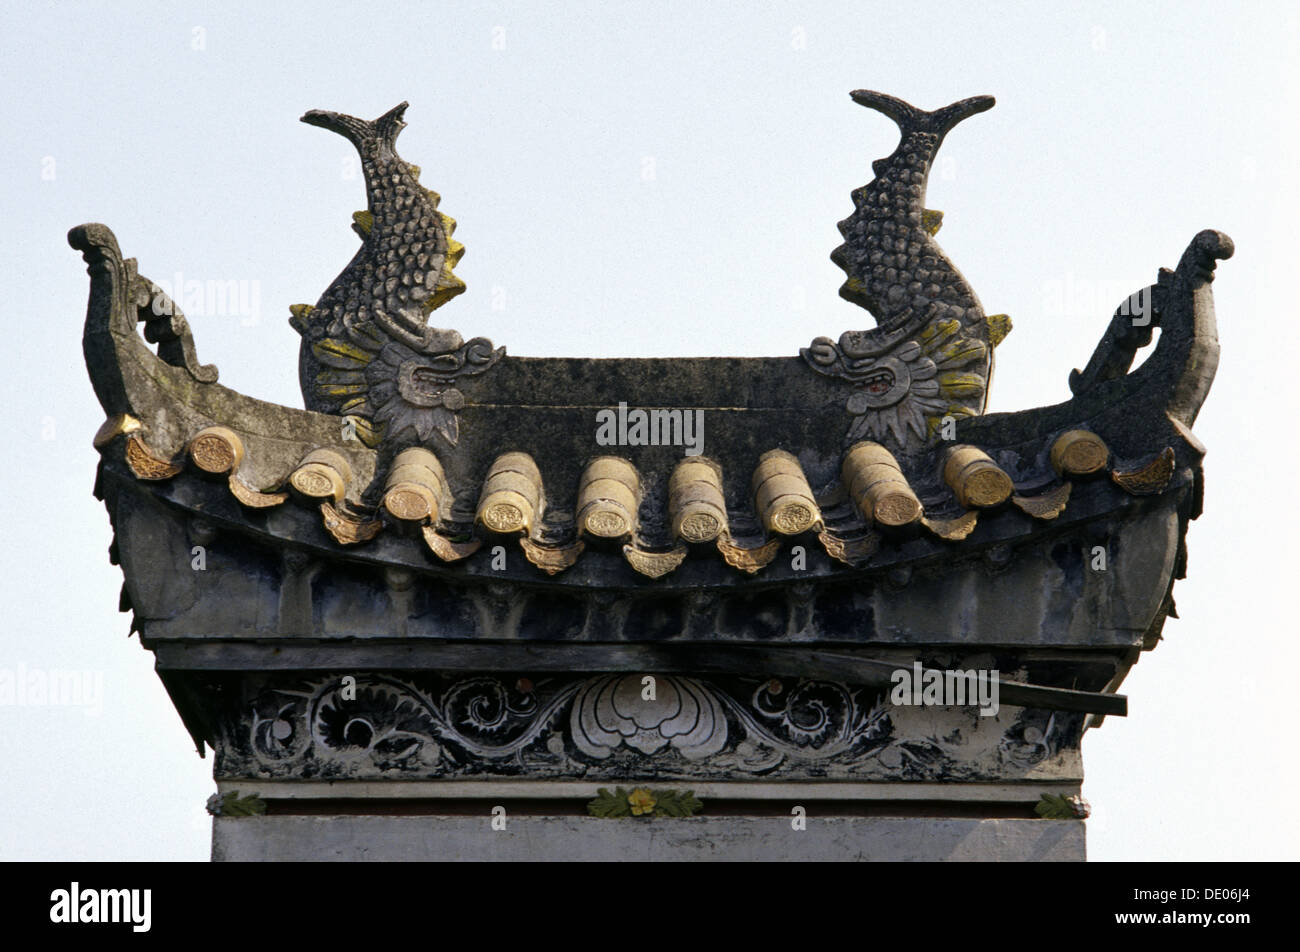 Blick auf die geschnitzten umgedrehten Eave Yueyang Turm stammt aus der Zeit der drei Reiche (220-280 n. Chr.) als einer der drei großen Türme im Süden des Yangtze-Flusses in China aufgeführt.  Provinz Hunan China. Stockfoto